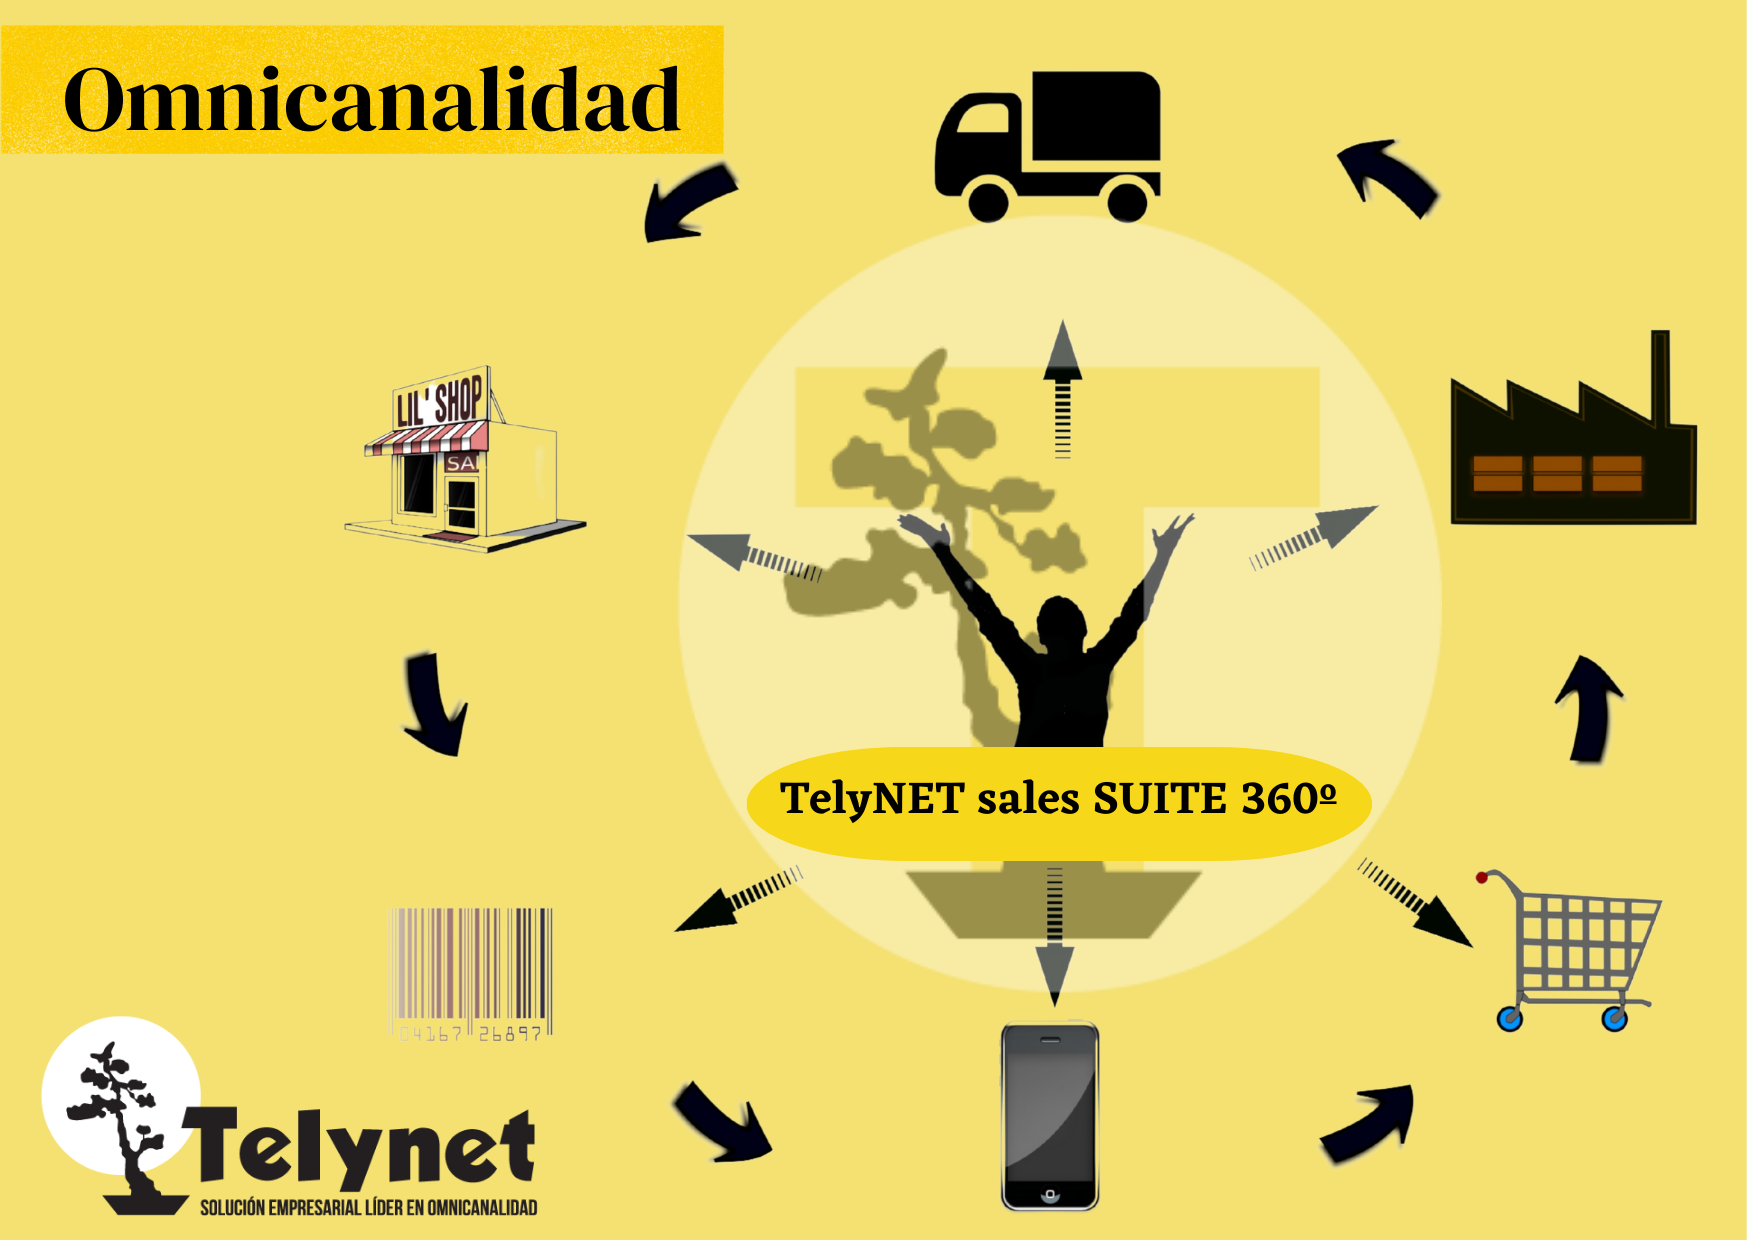 Telynet sales SUITE 360 omnicanalidad (2)